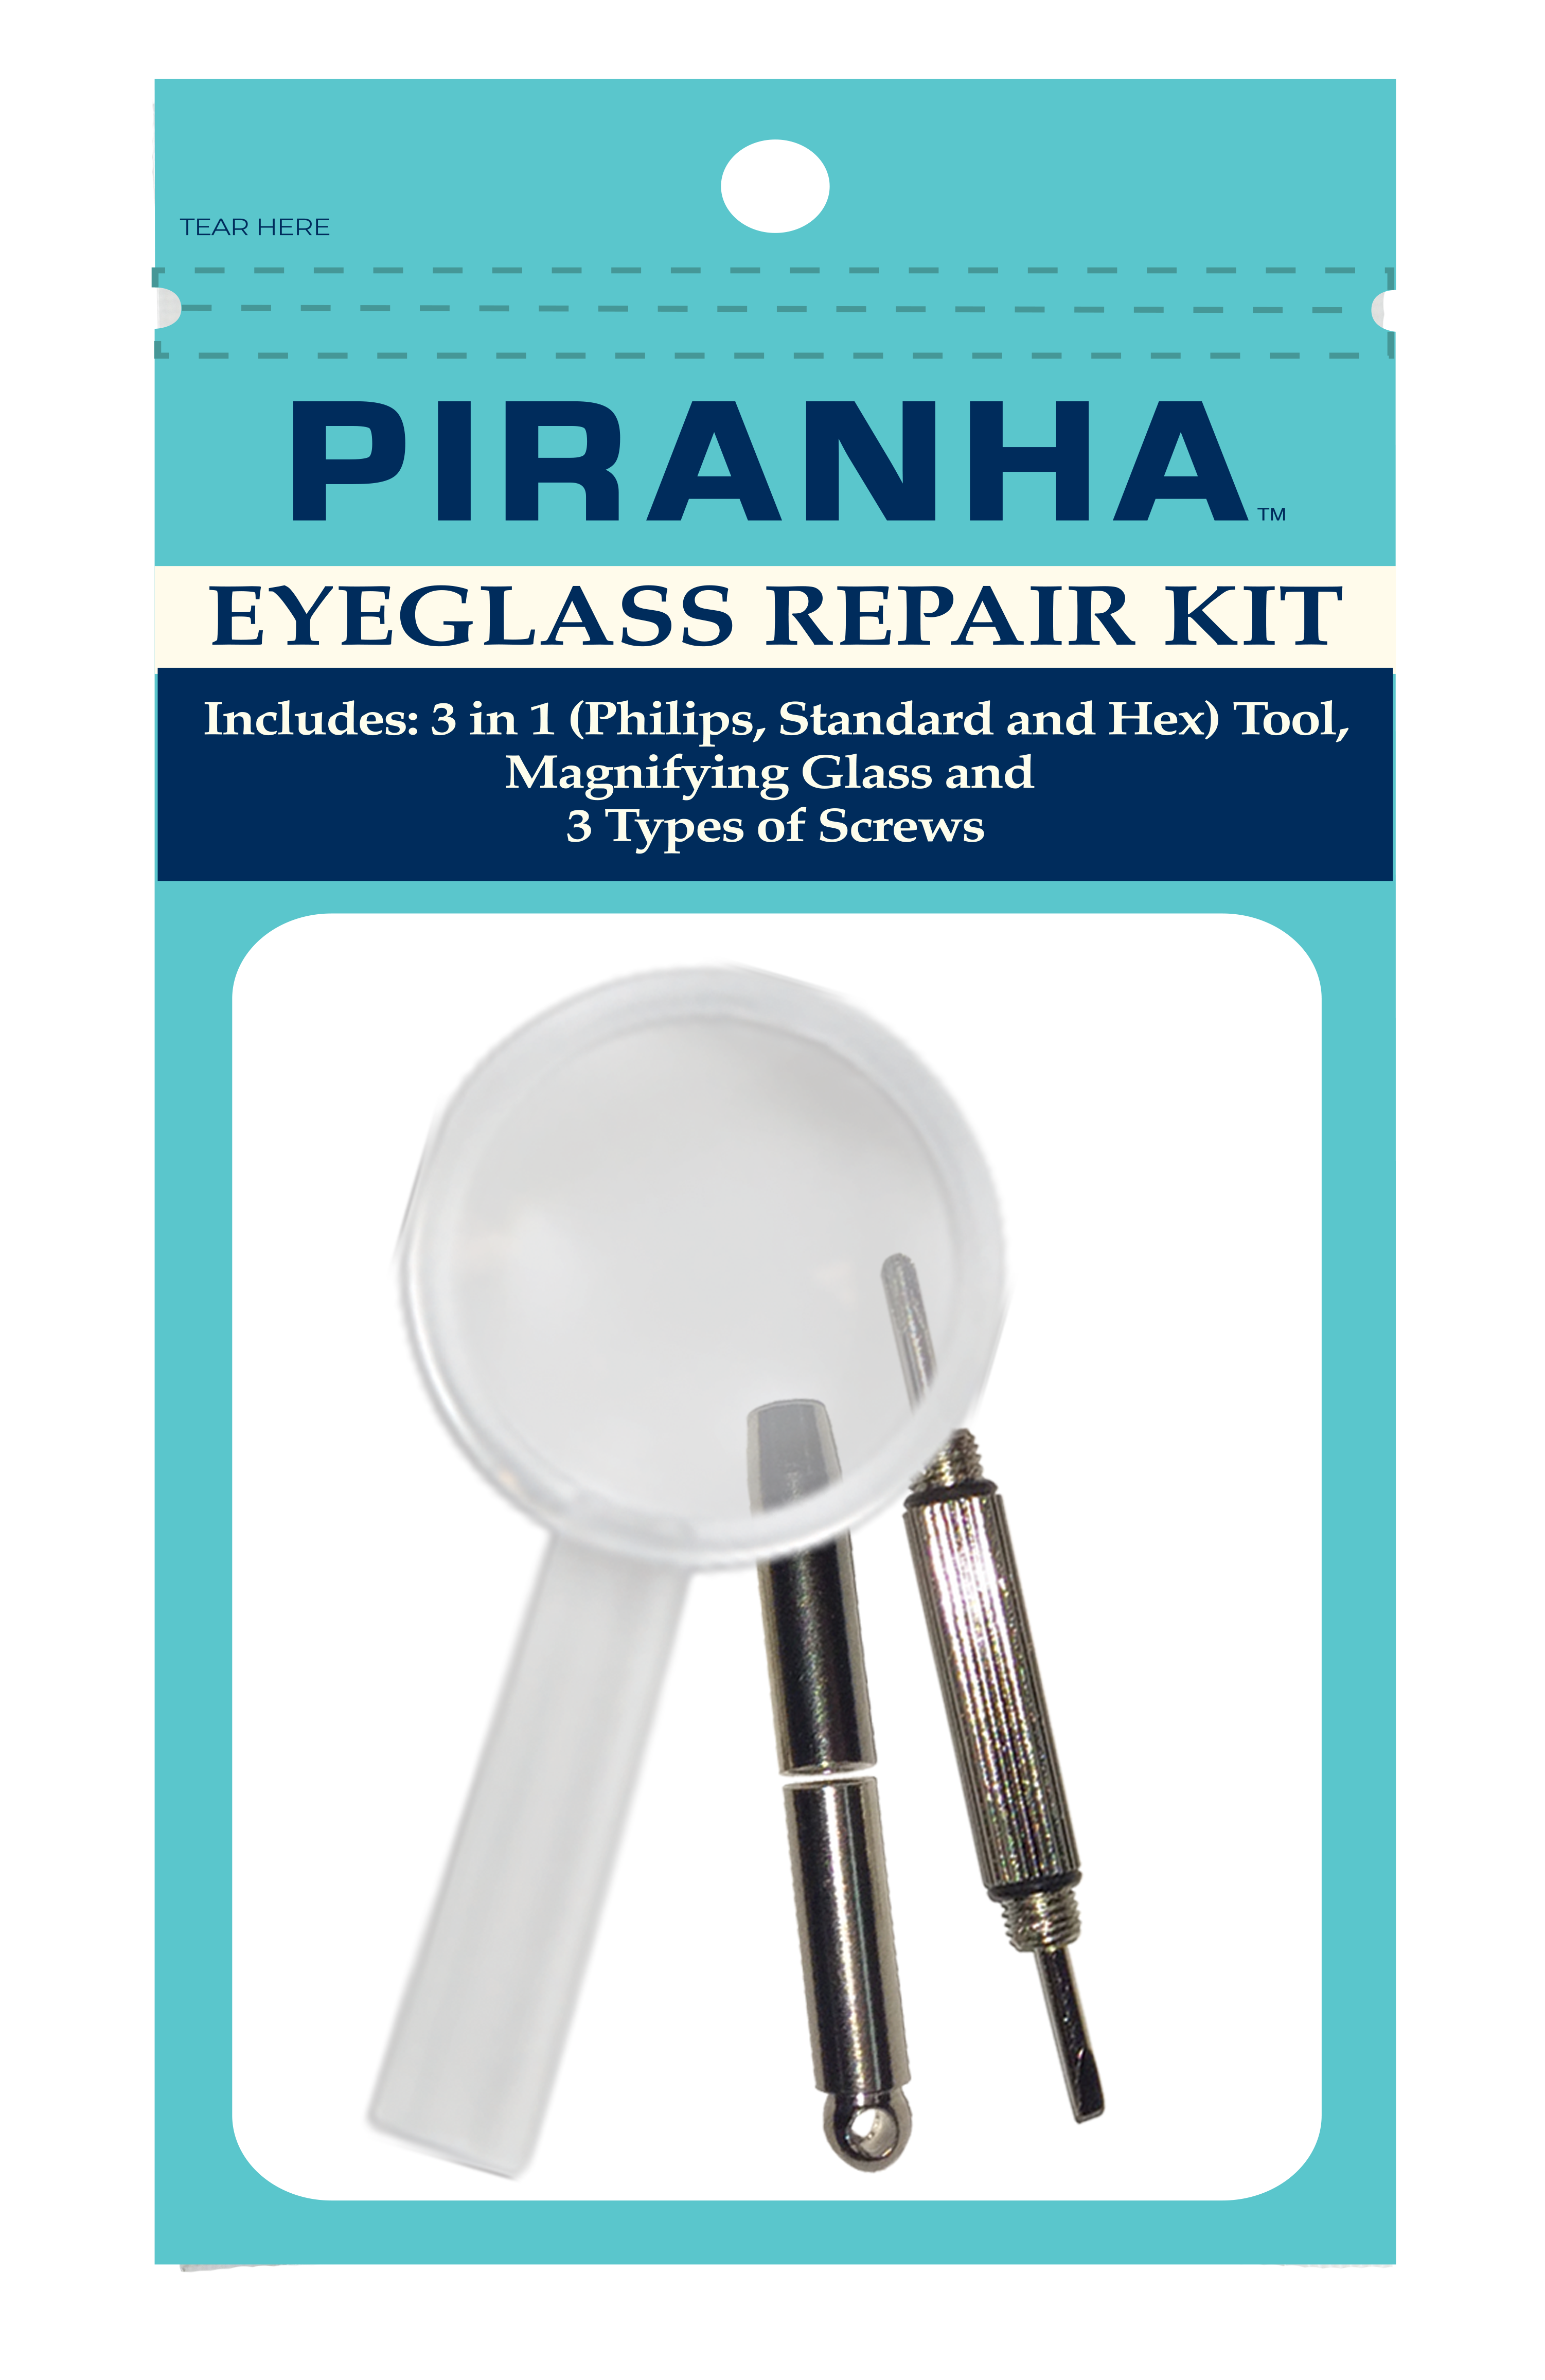 Eye glass repair kit